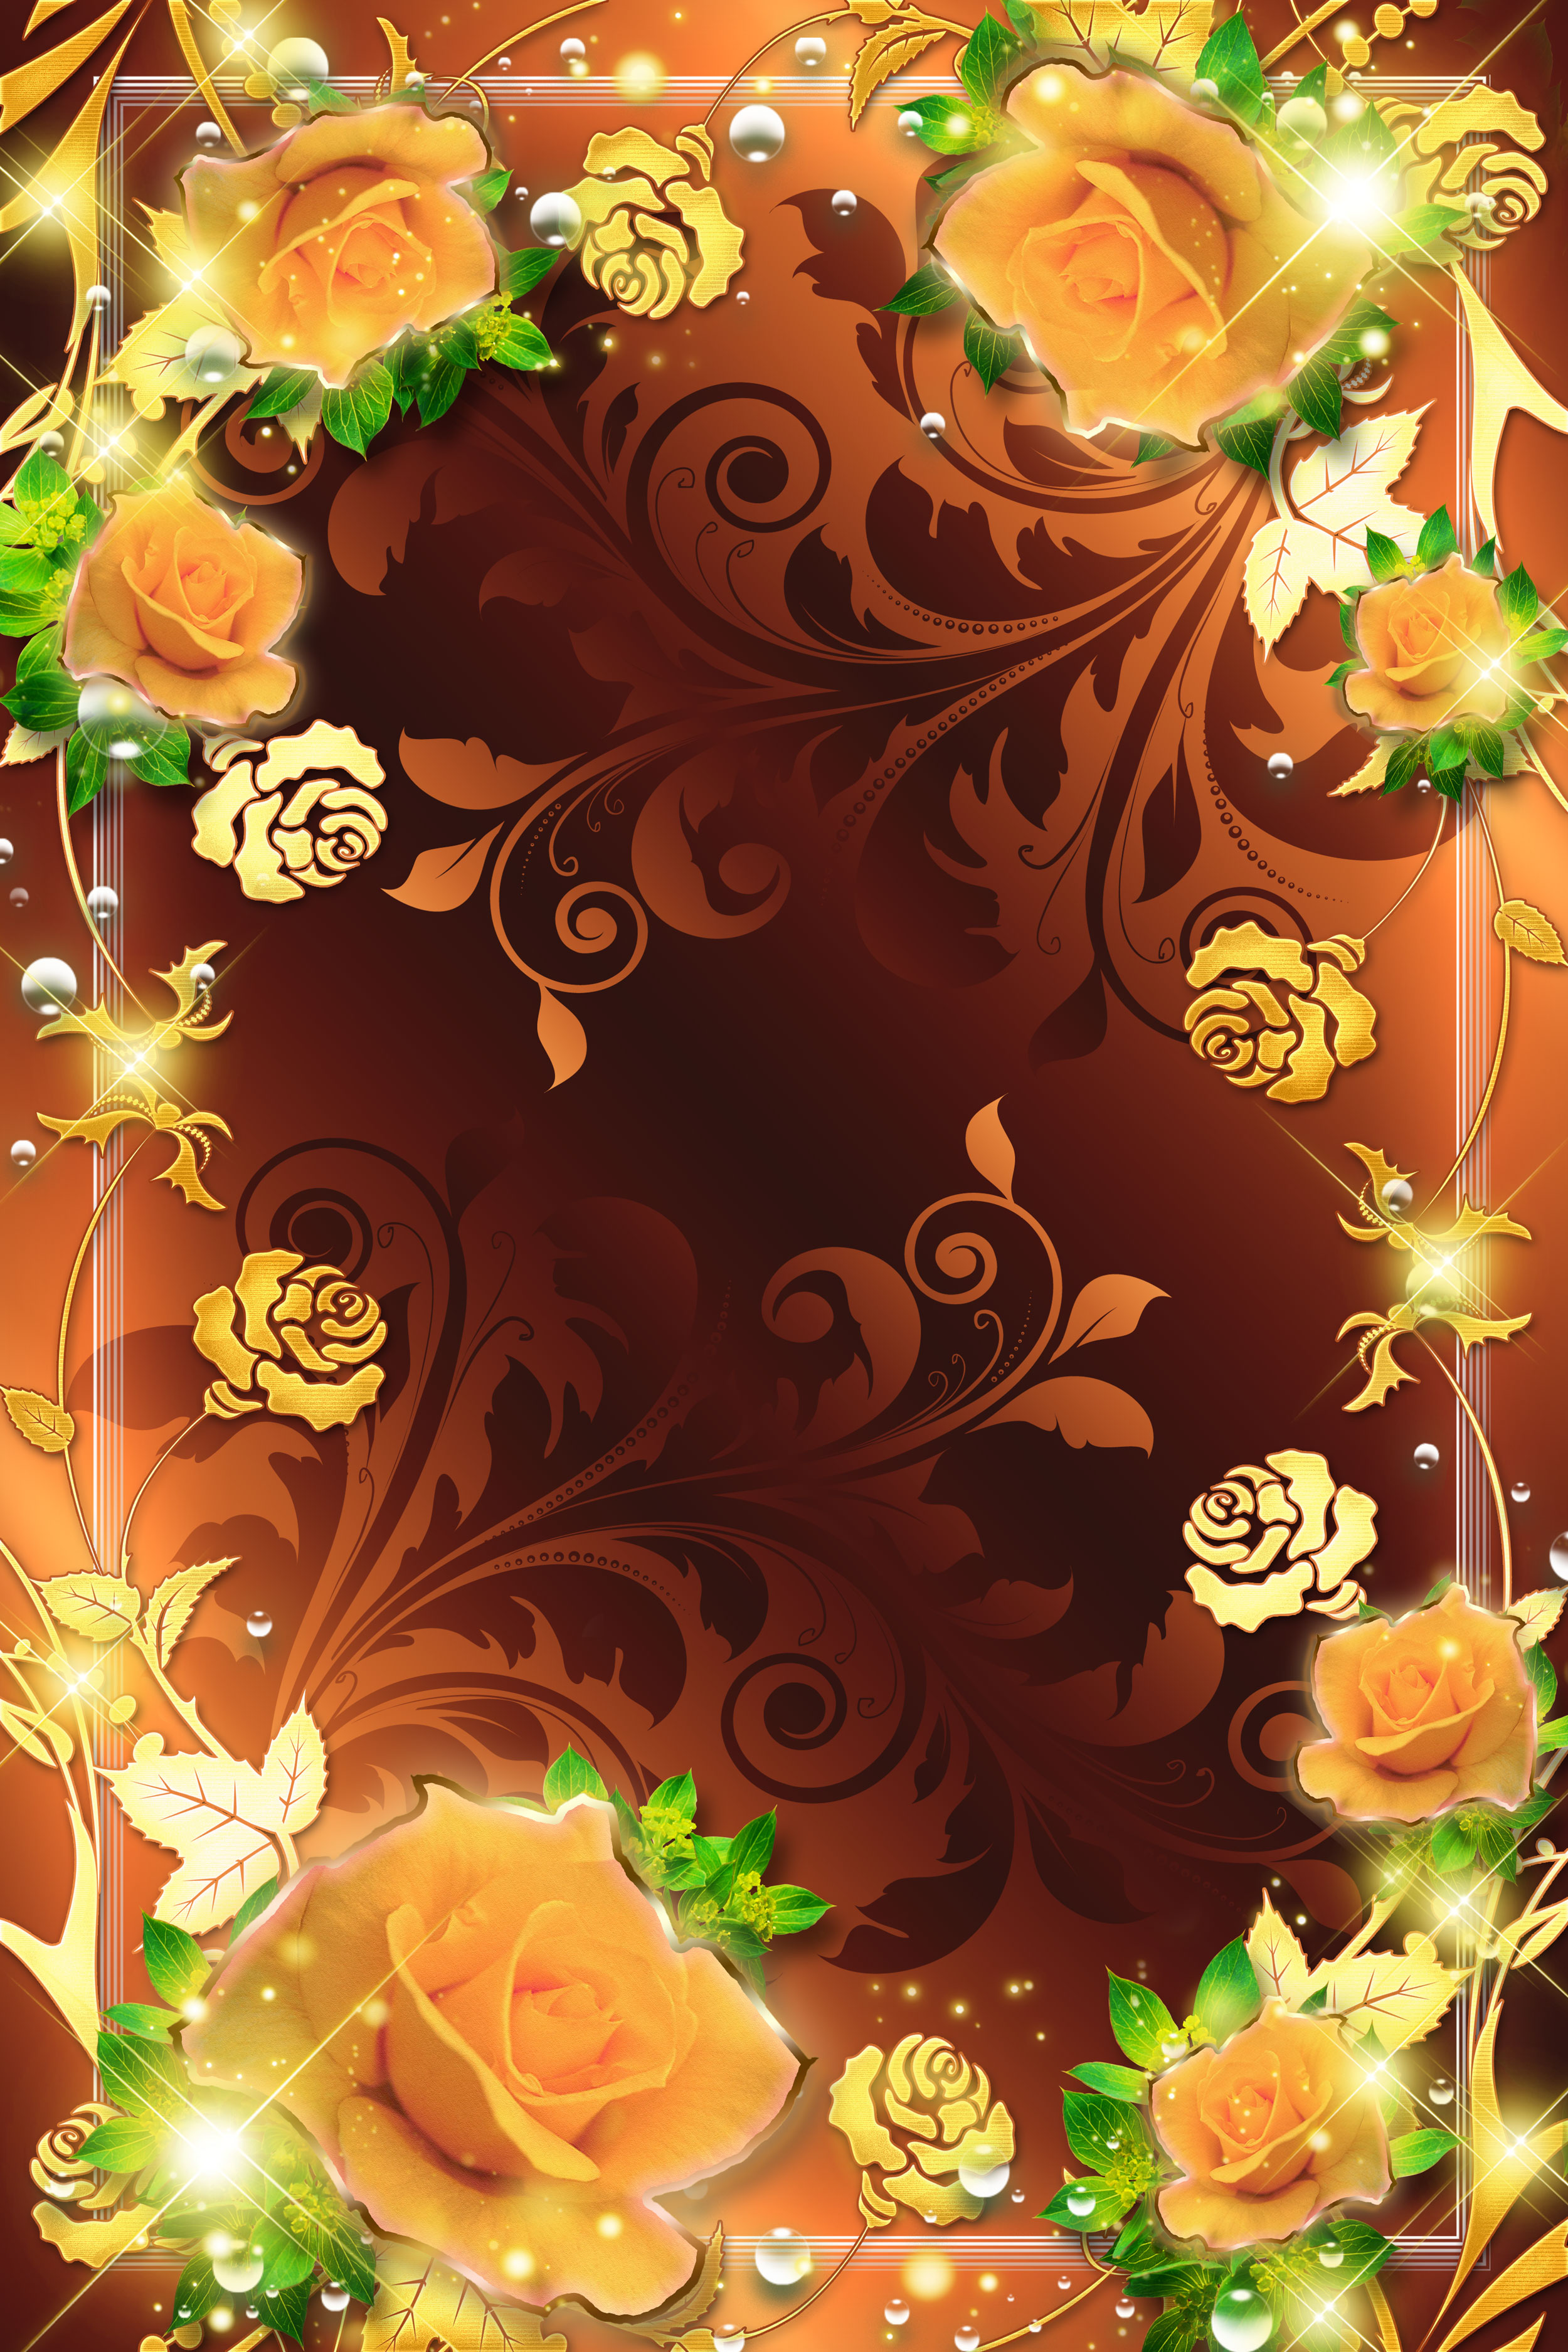 オレンジ色の花のイラスト フリー素材 壁紙 背景no 2 オレンジのバラ 金色